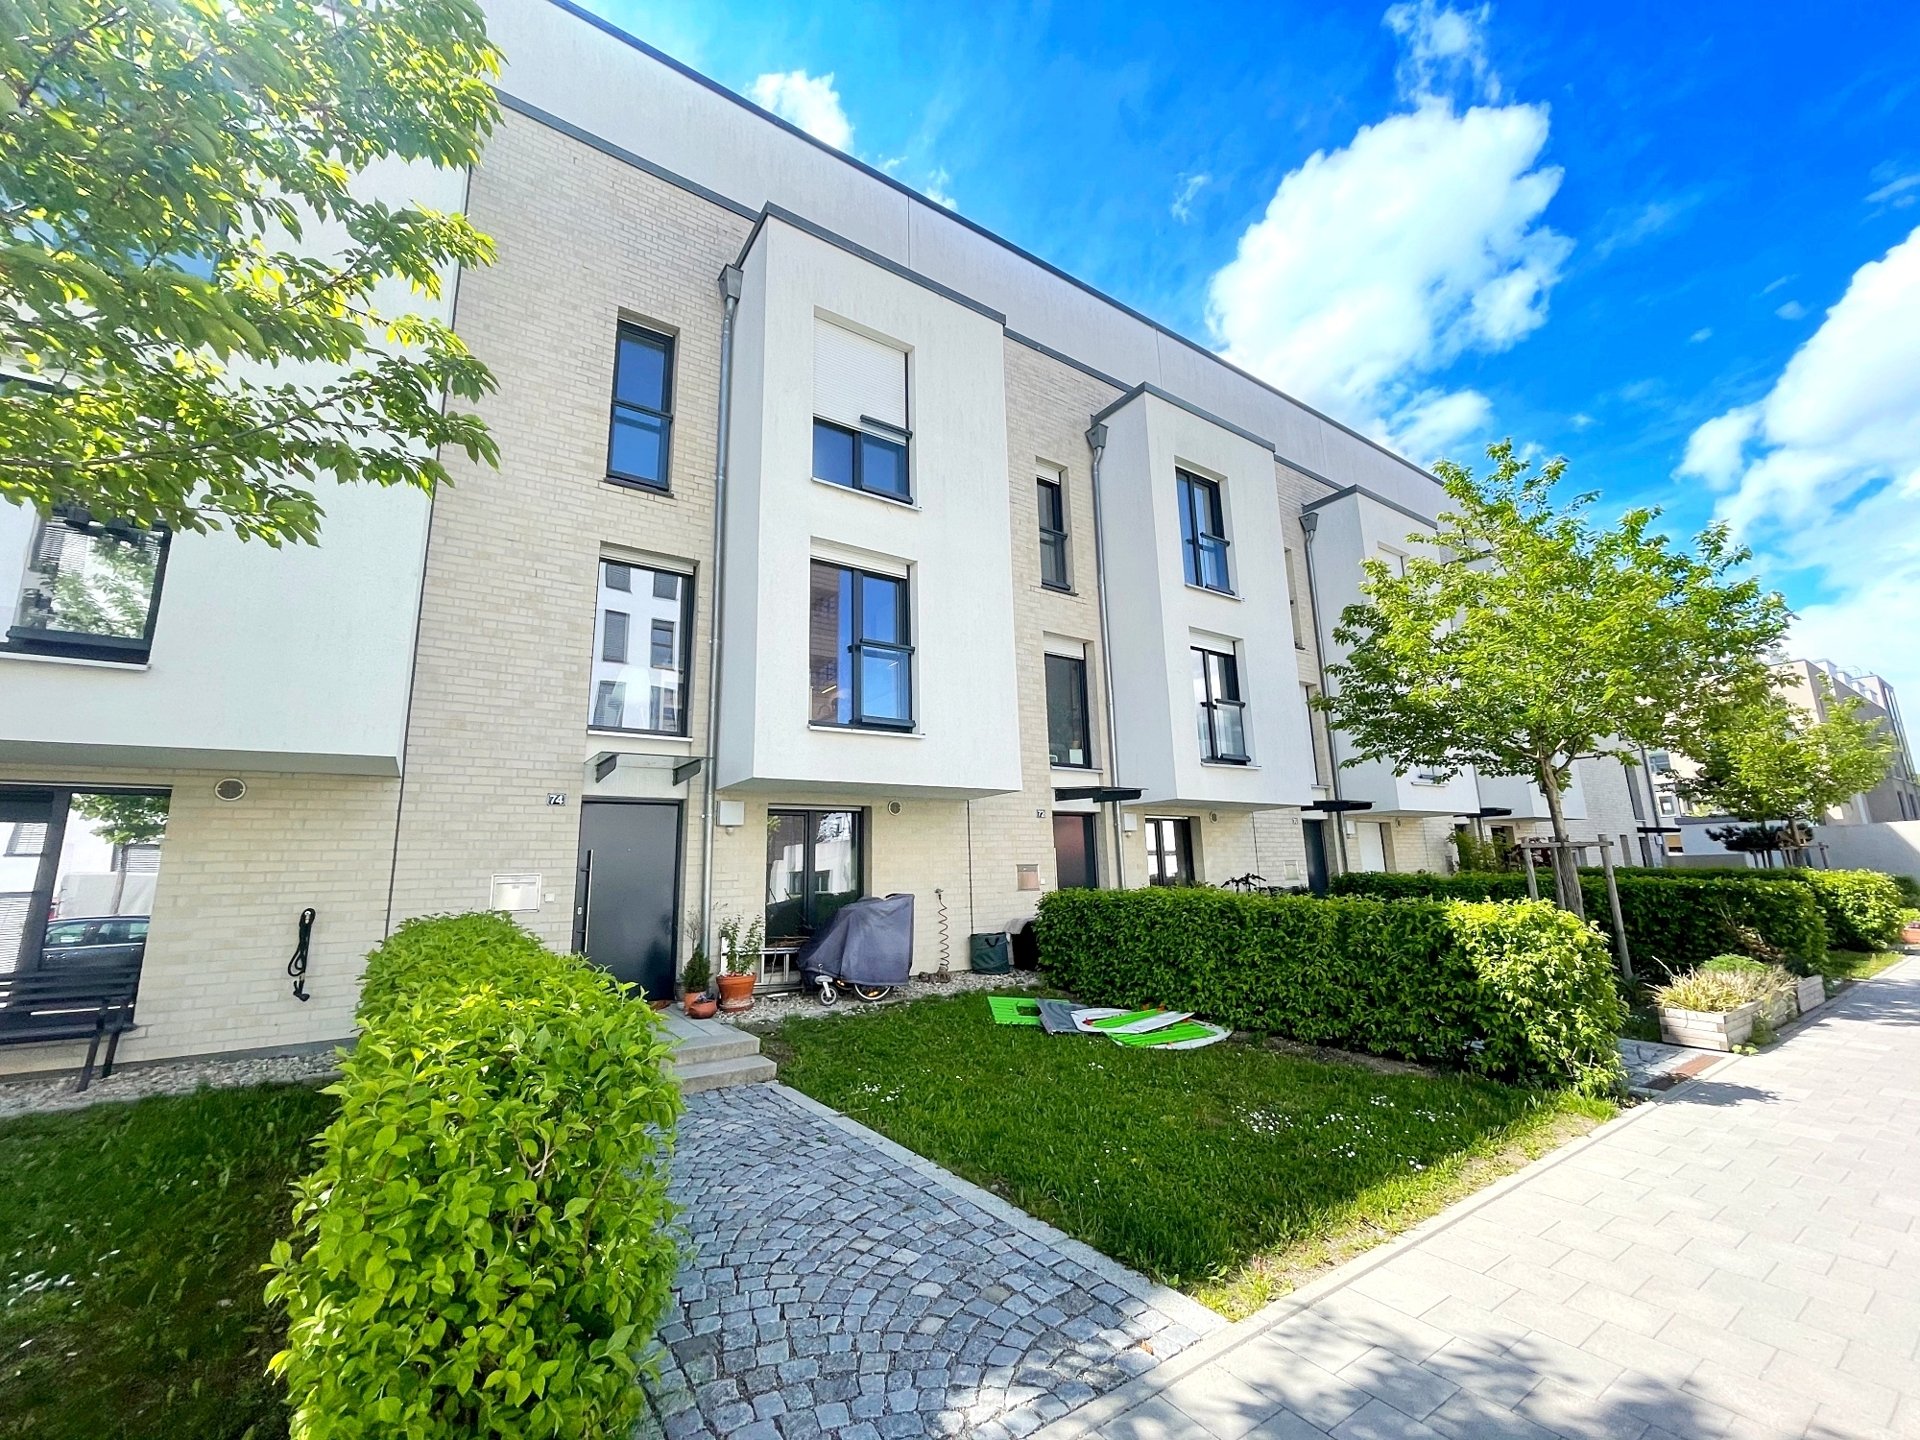 Immobilienangebot - Regensburg - Alle - Townhaus mit großer Dachterrasse und Garten in Altstadtnähe! Frei ab 01.08.!